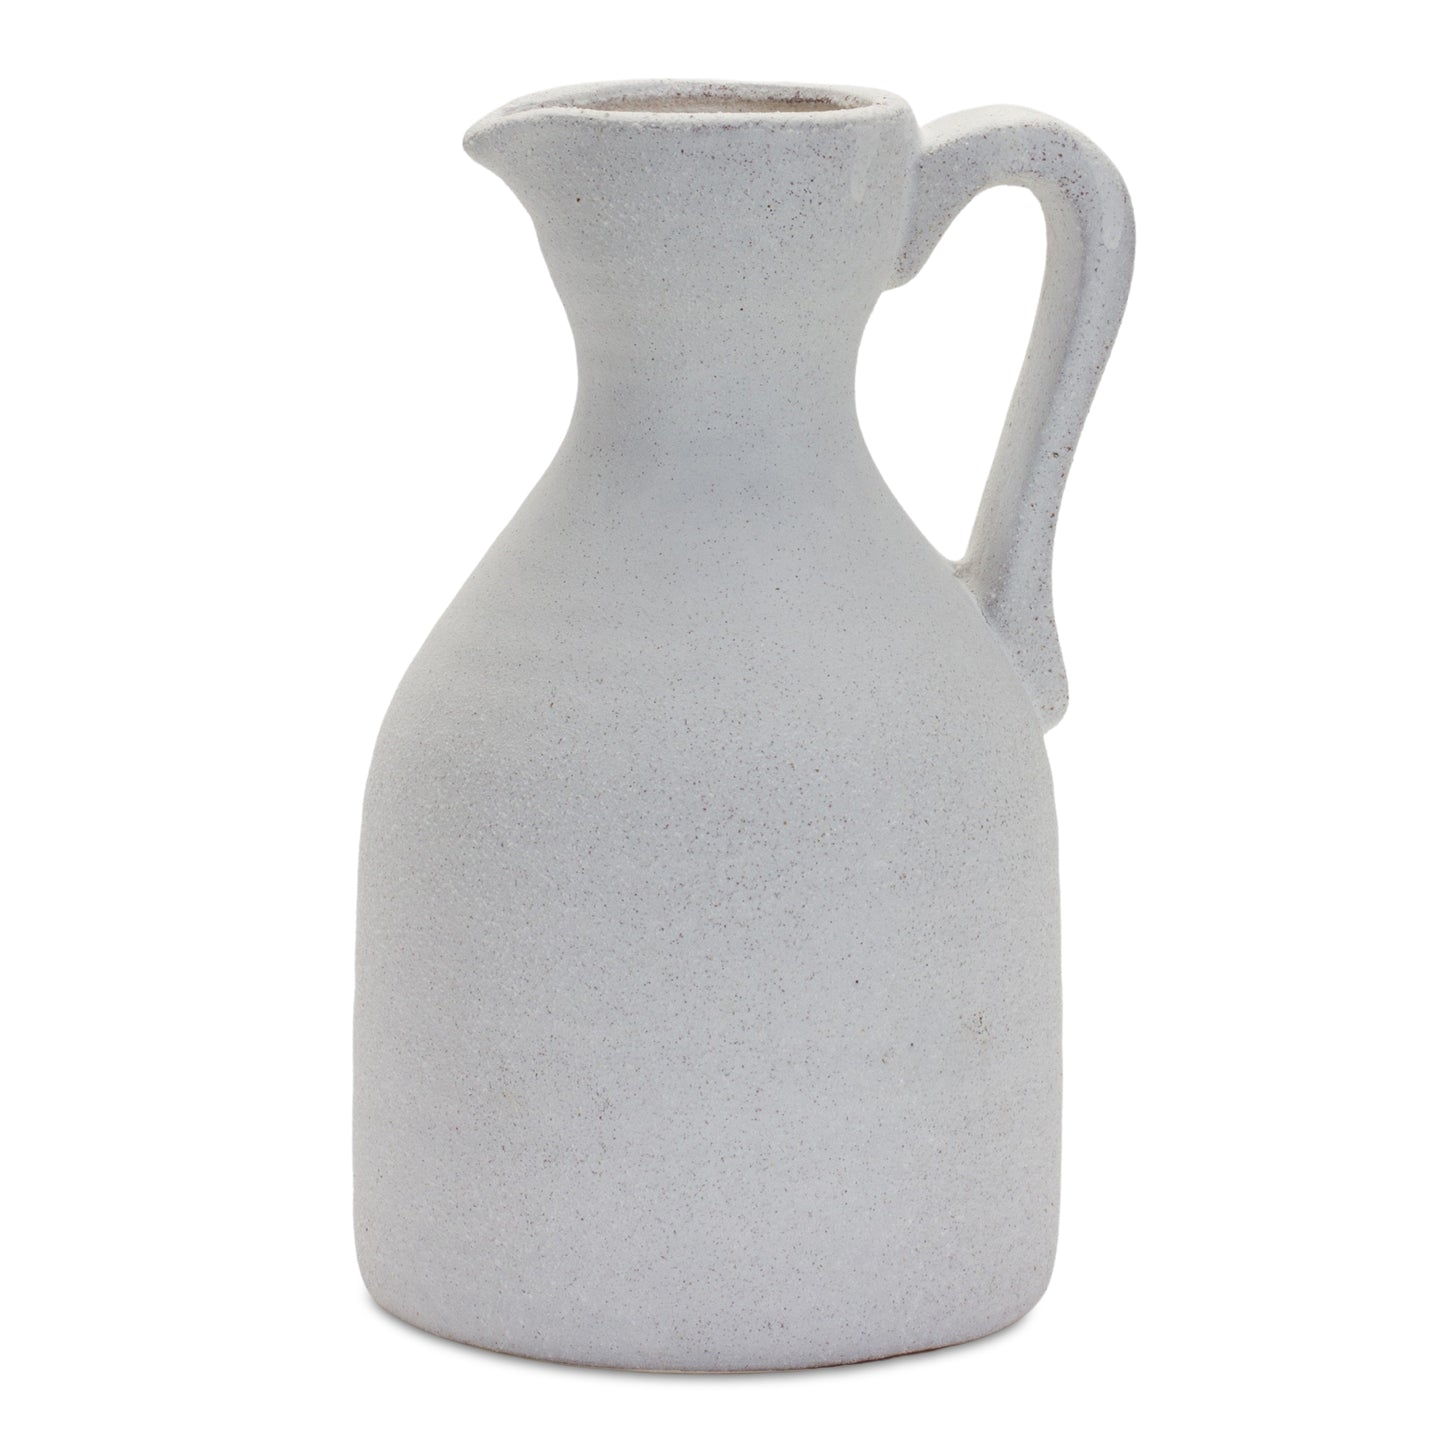 Modern White Clay Pitcher Vase 10.5"H